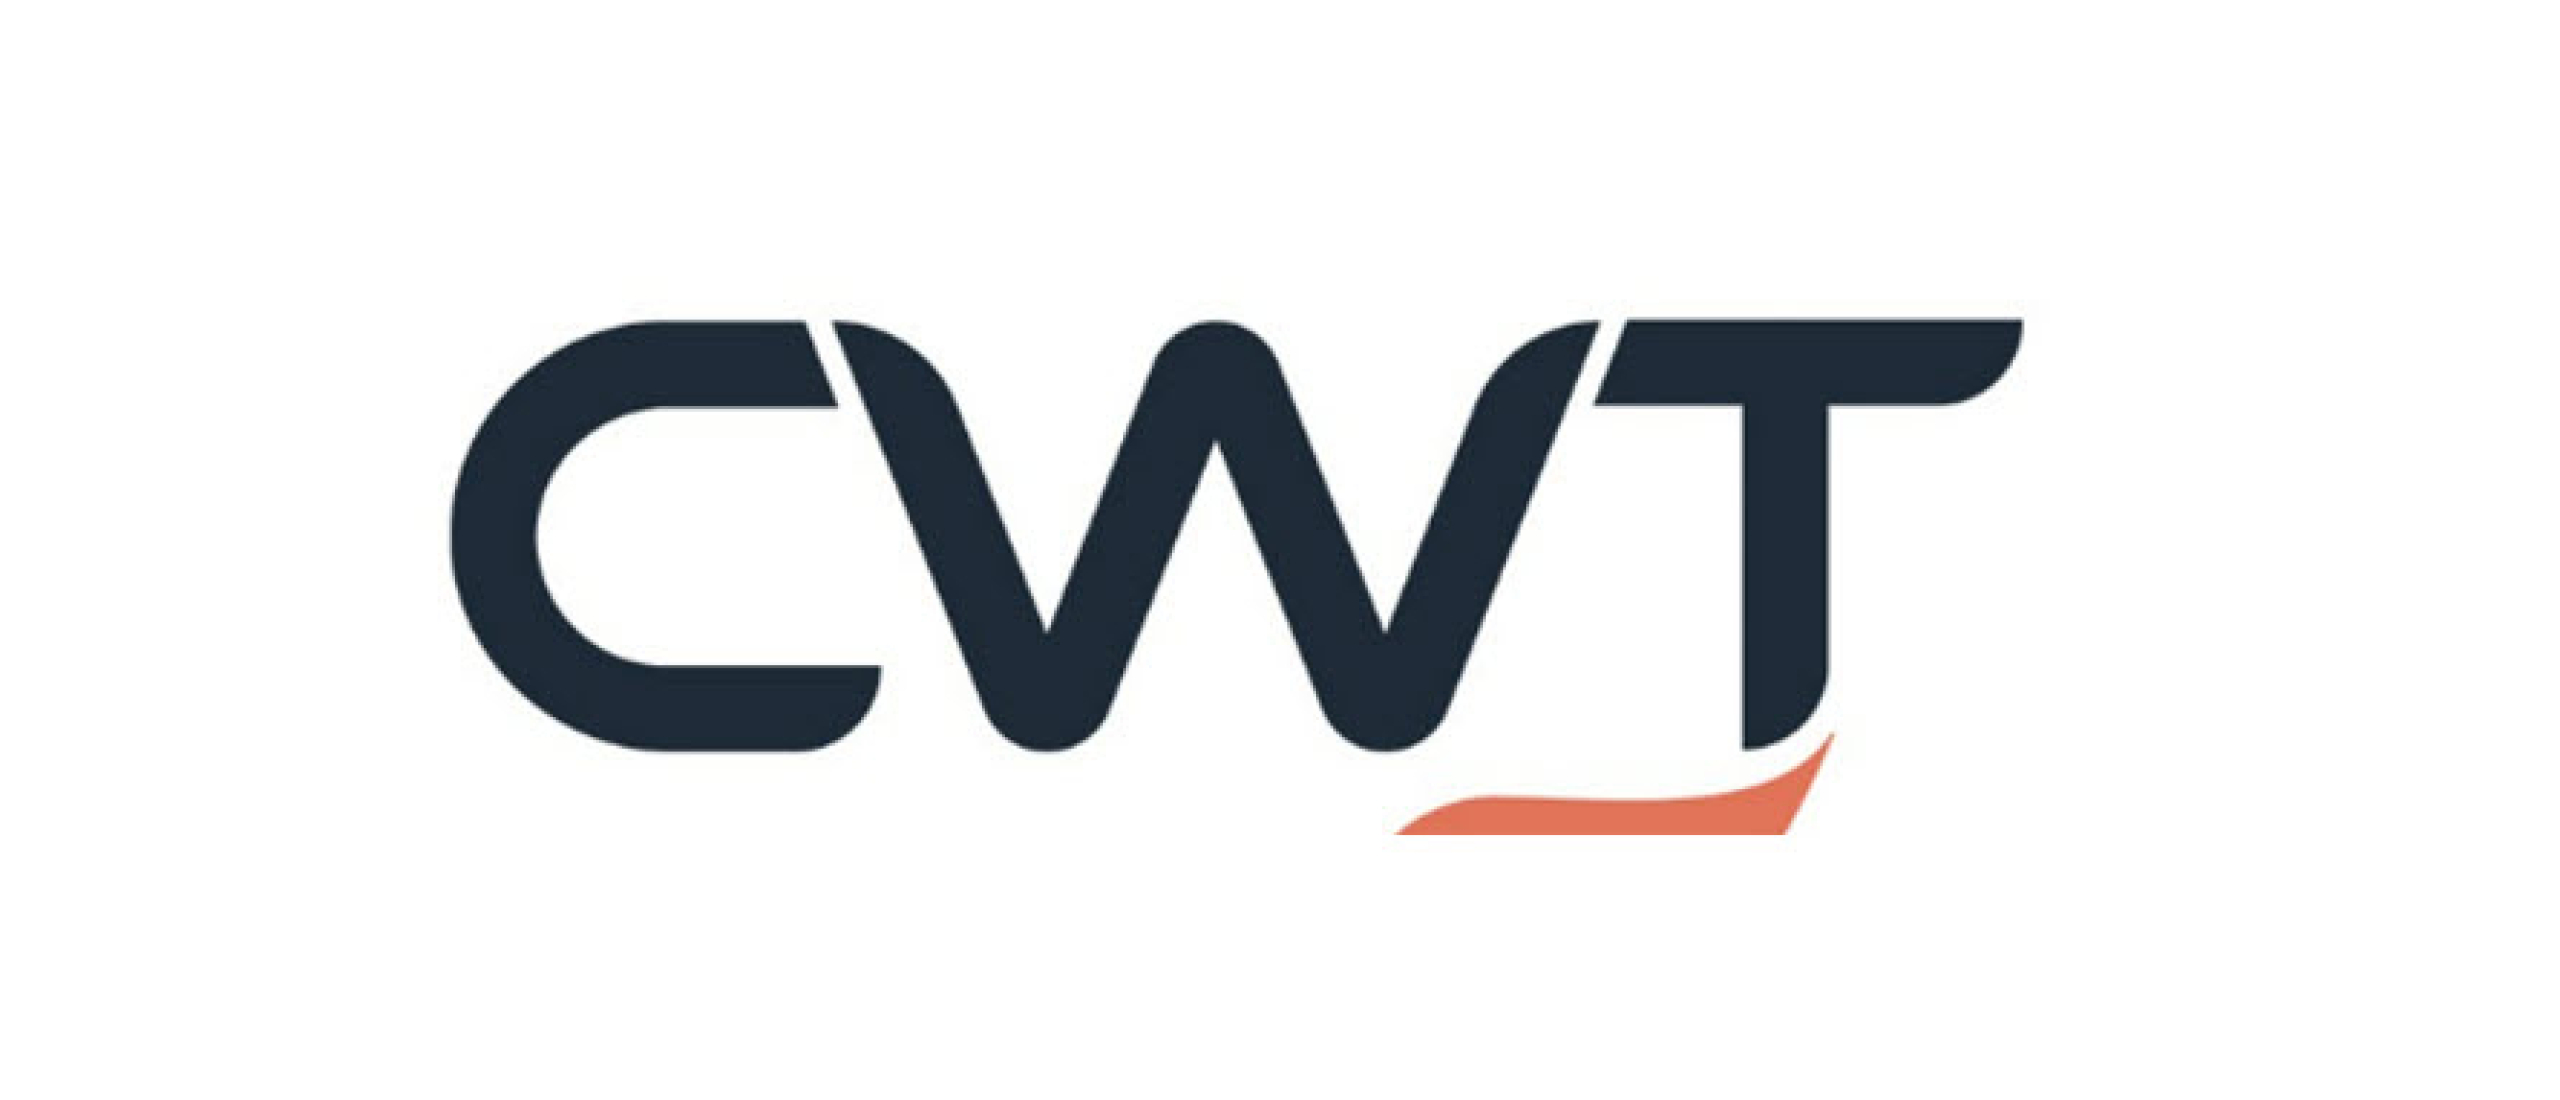 CWT-Spotnana’s strategic alliance